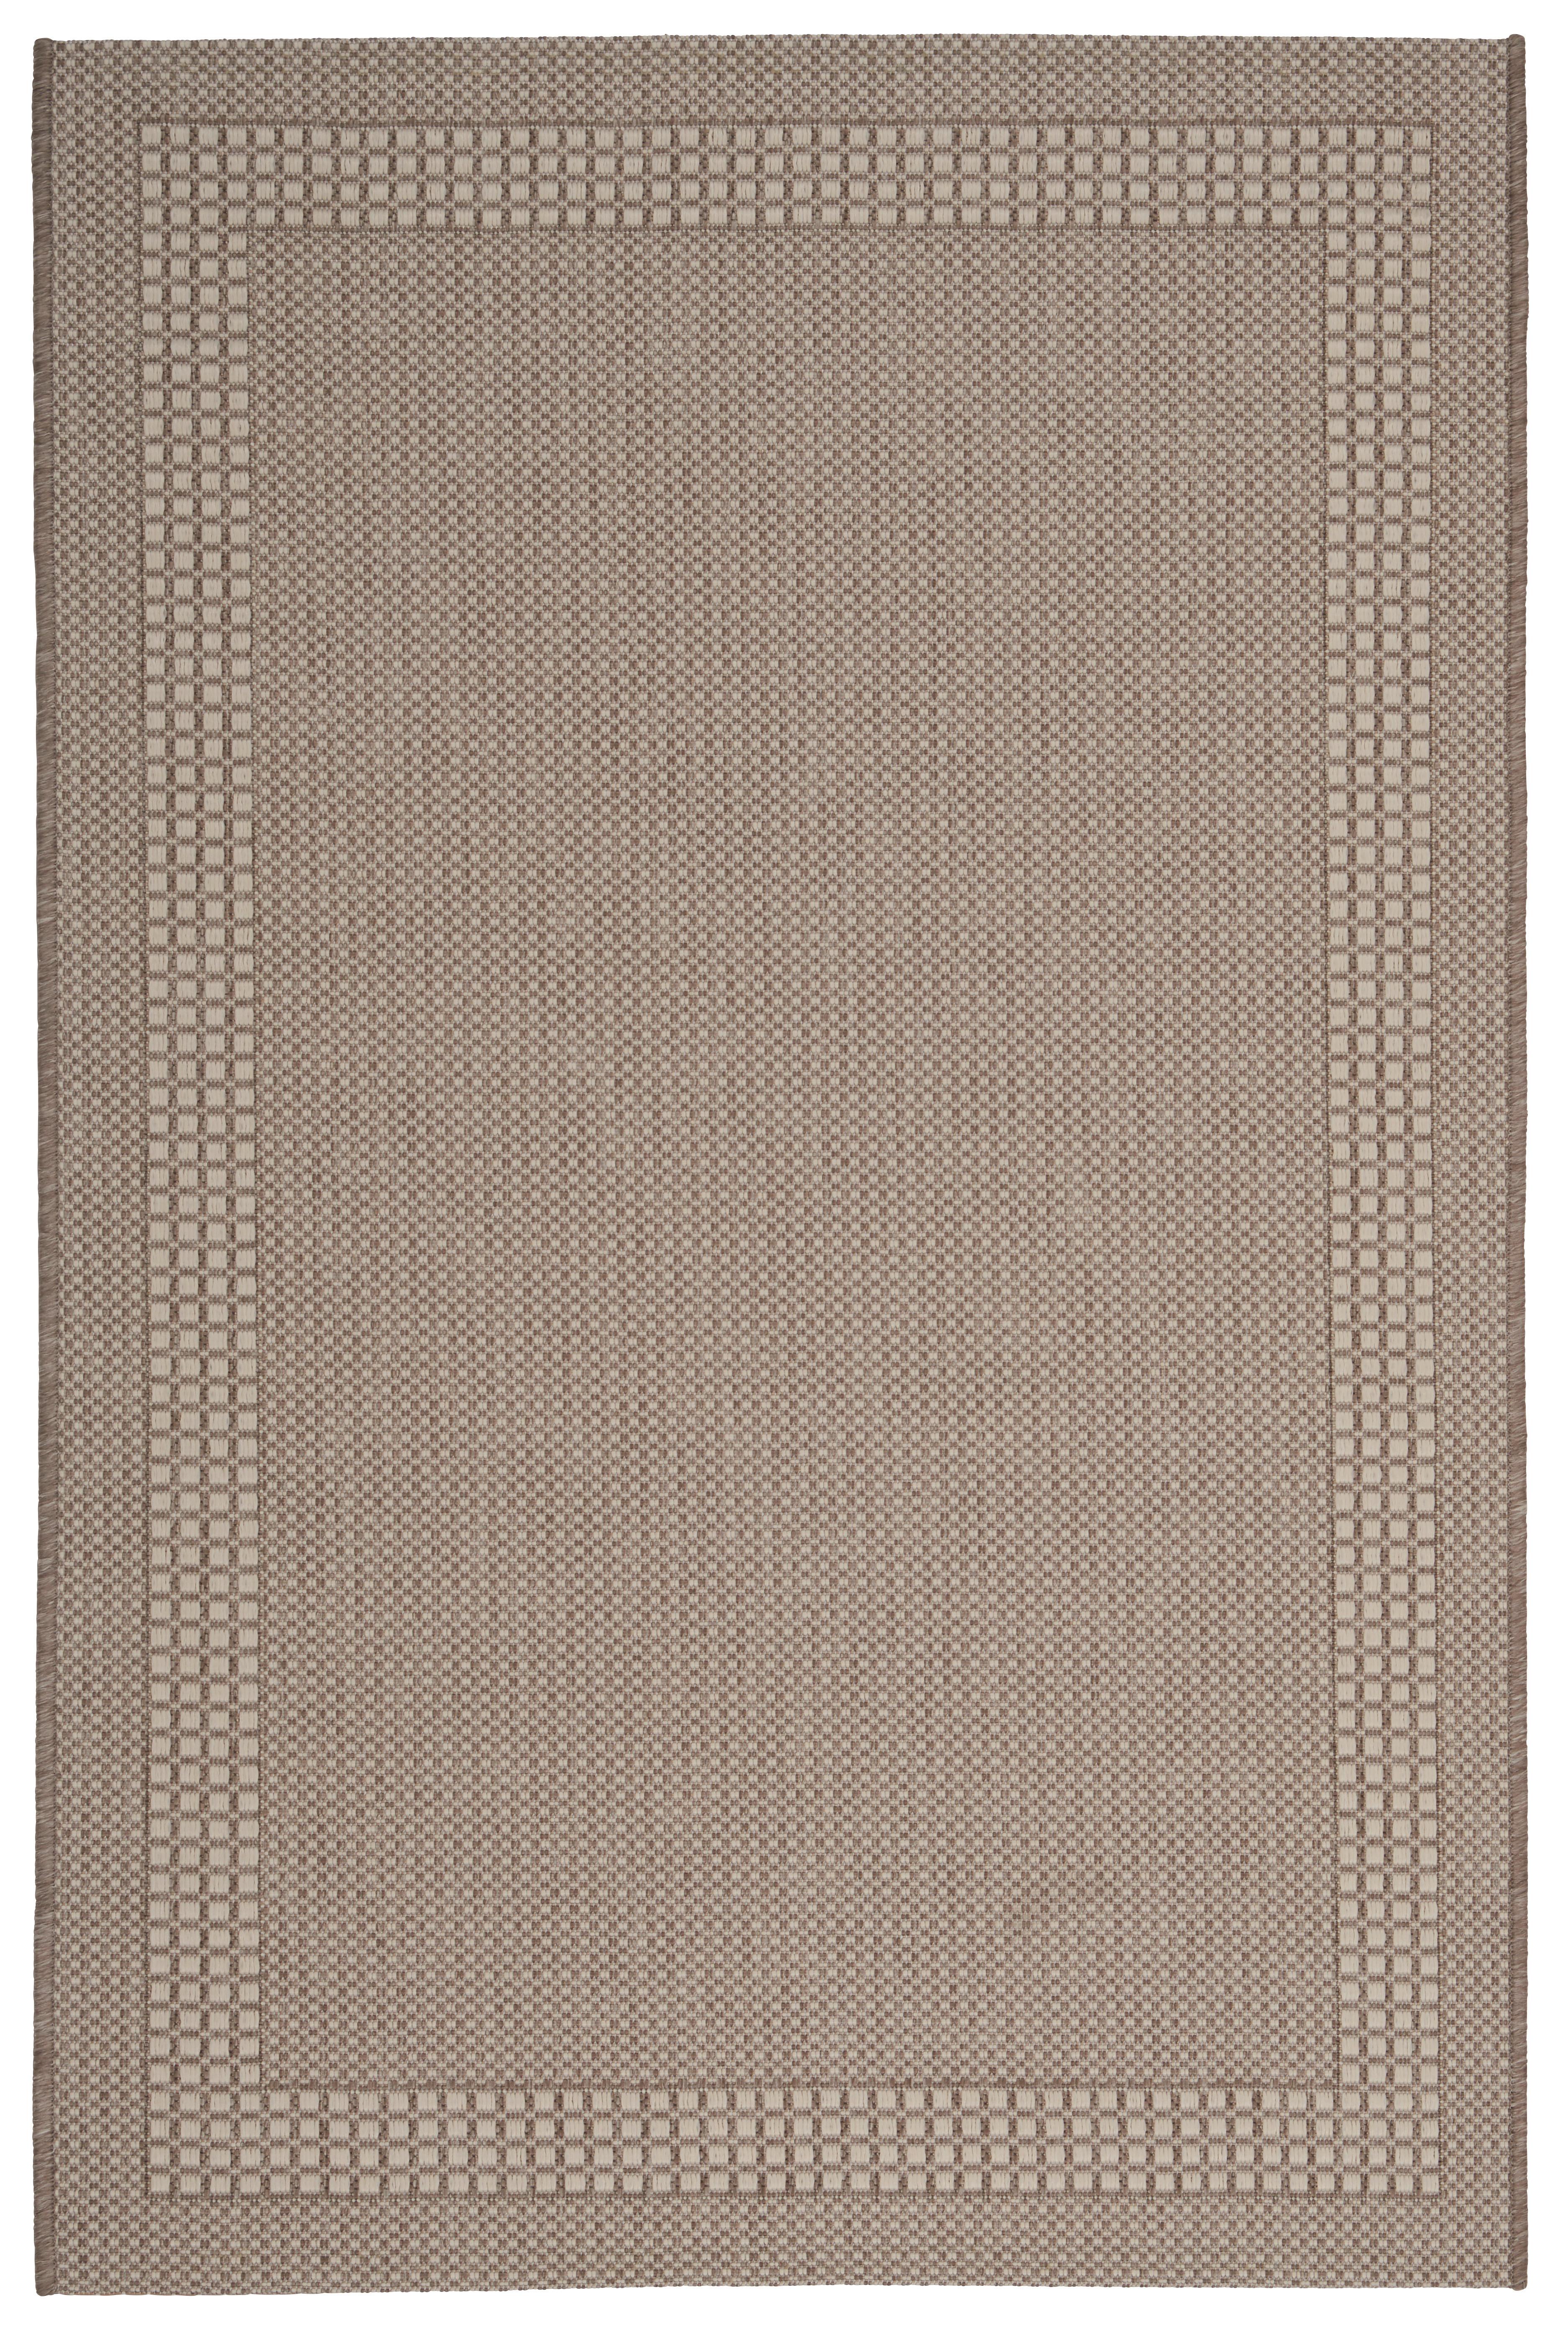 Síkszövött Szőnyeg Naomi 100/150 - Bézs, konvencionális, Textil (100/150cm) - Based